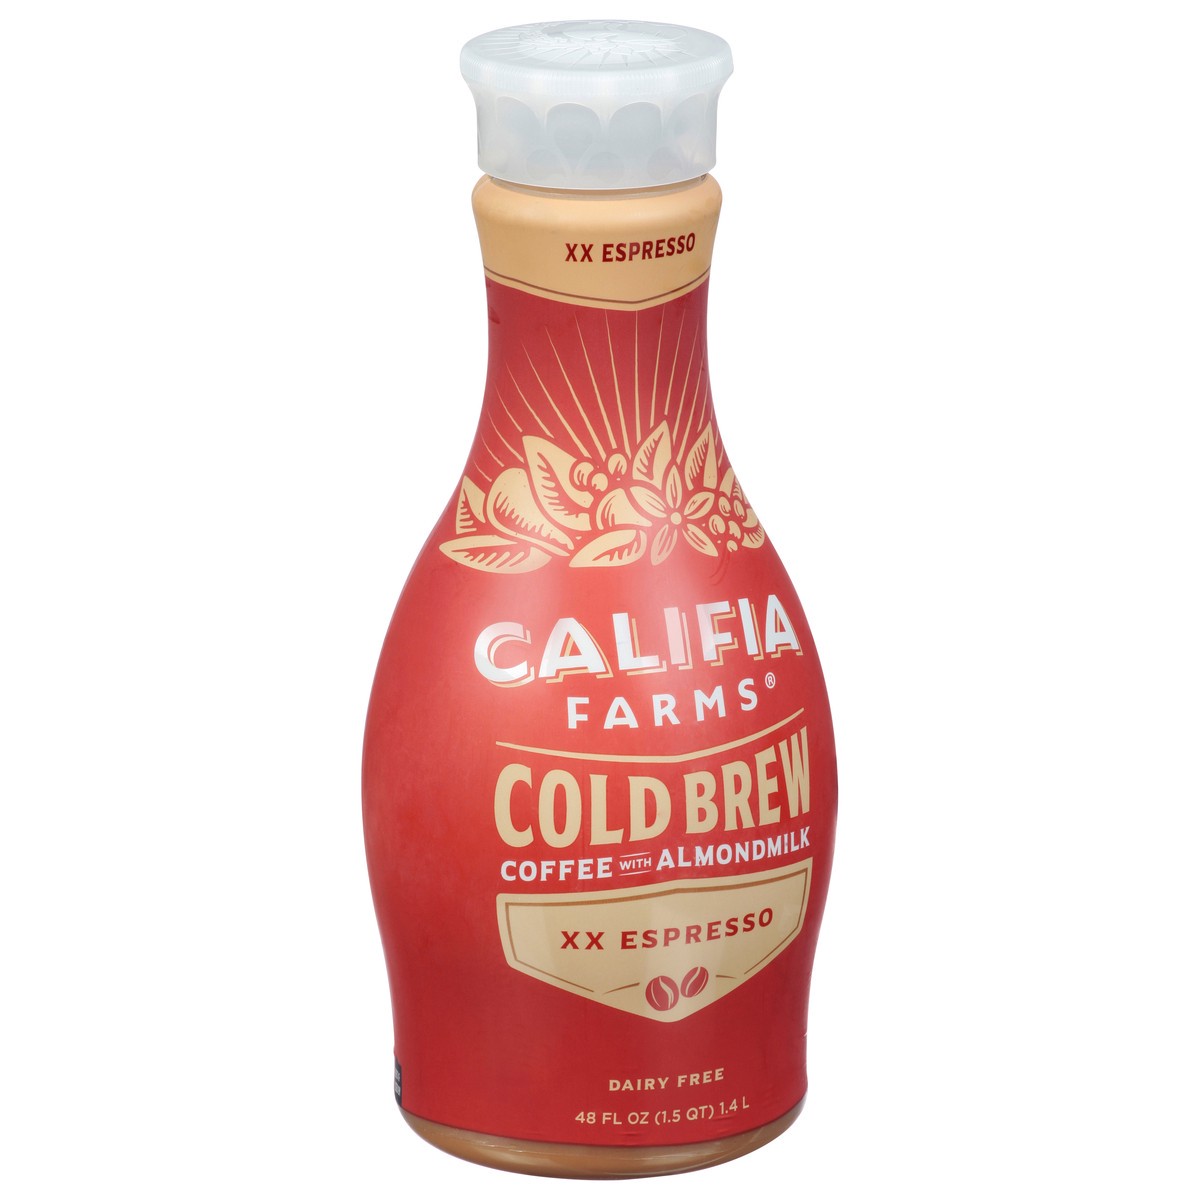 slide 11 of 14, Califia Farms XX Espresso Cold Brew Coffee with Almond Milk, 48 fl oz